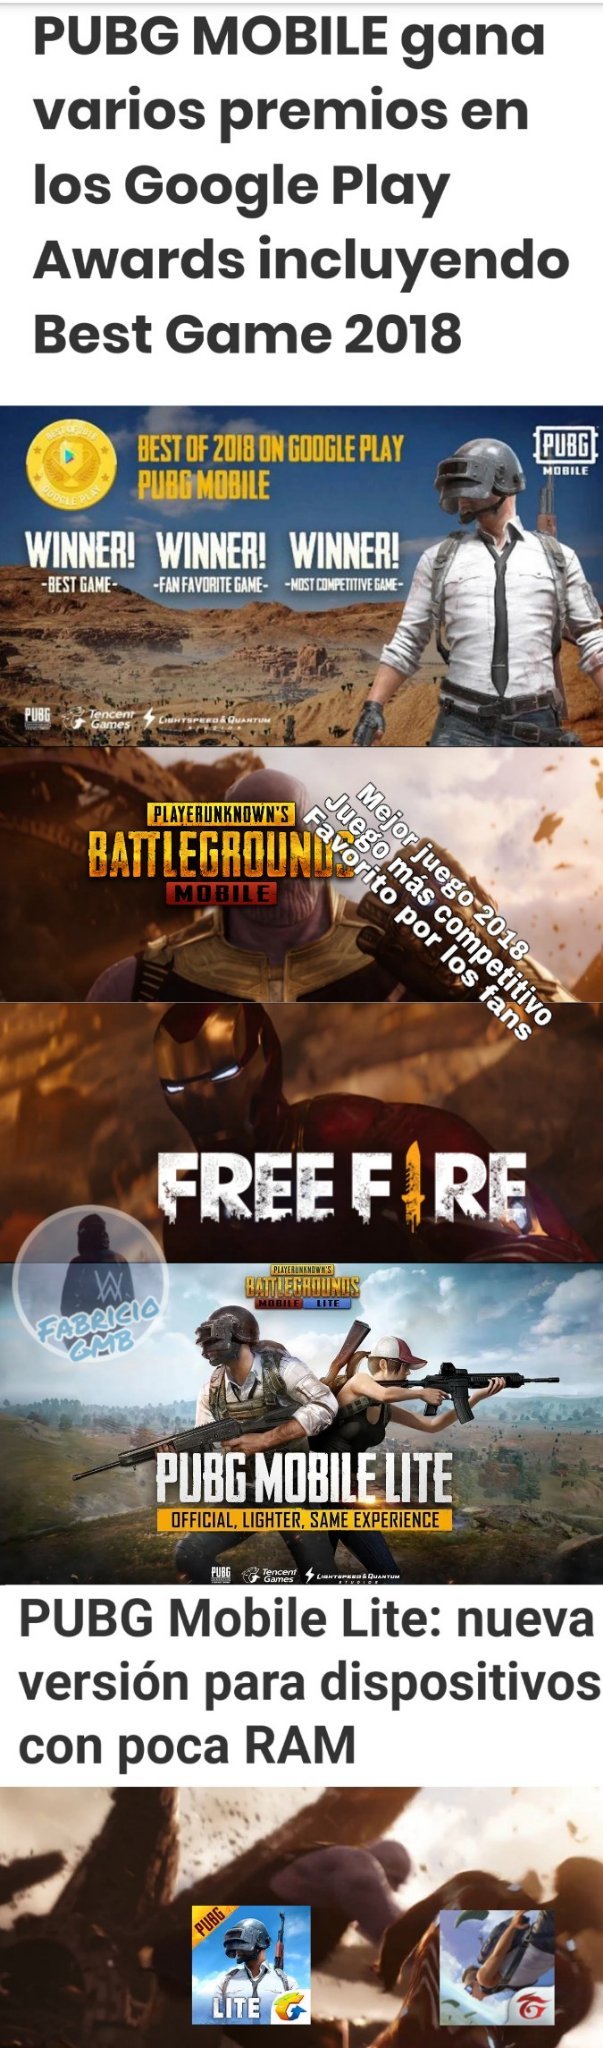 meme - pubg vs fortnite vs free fire meme